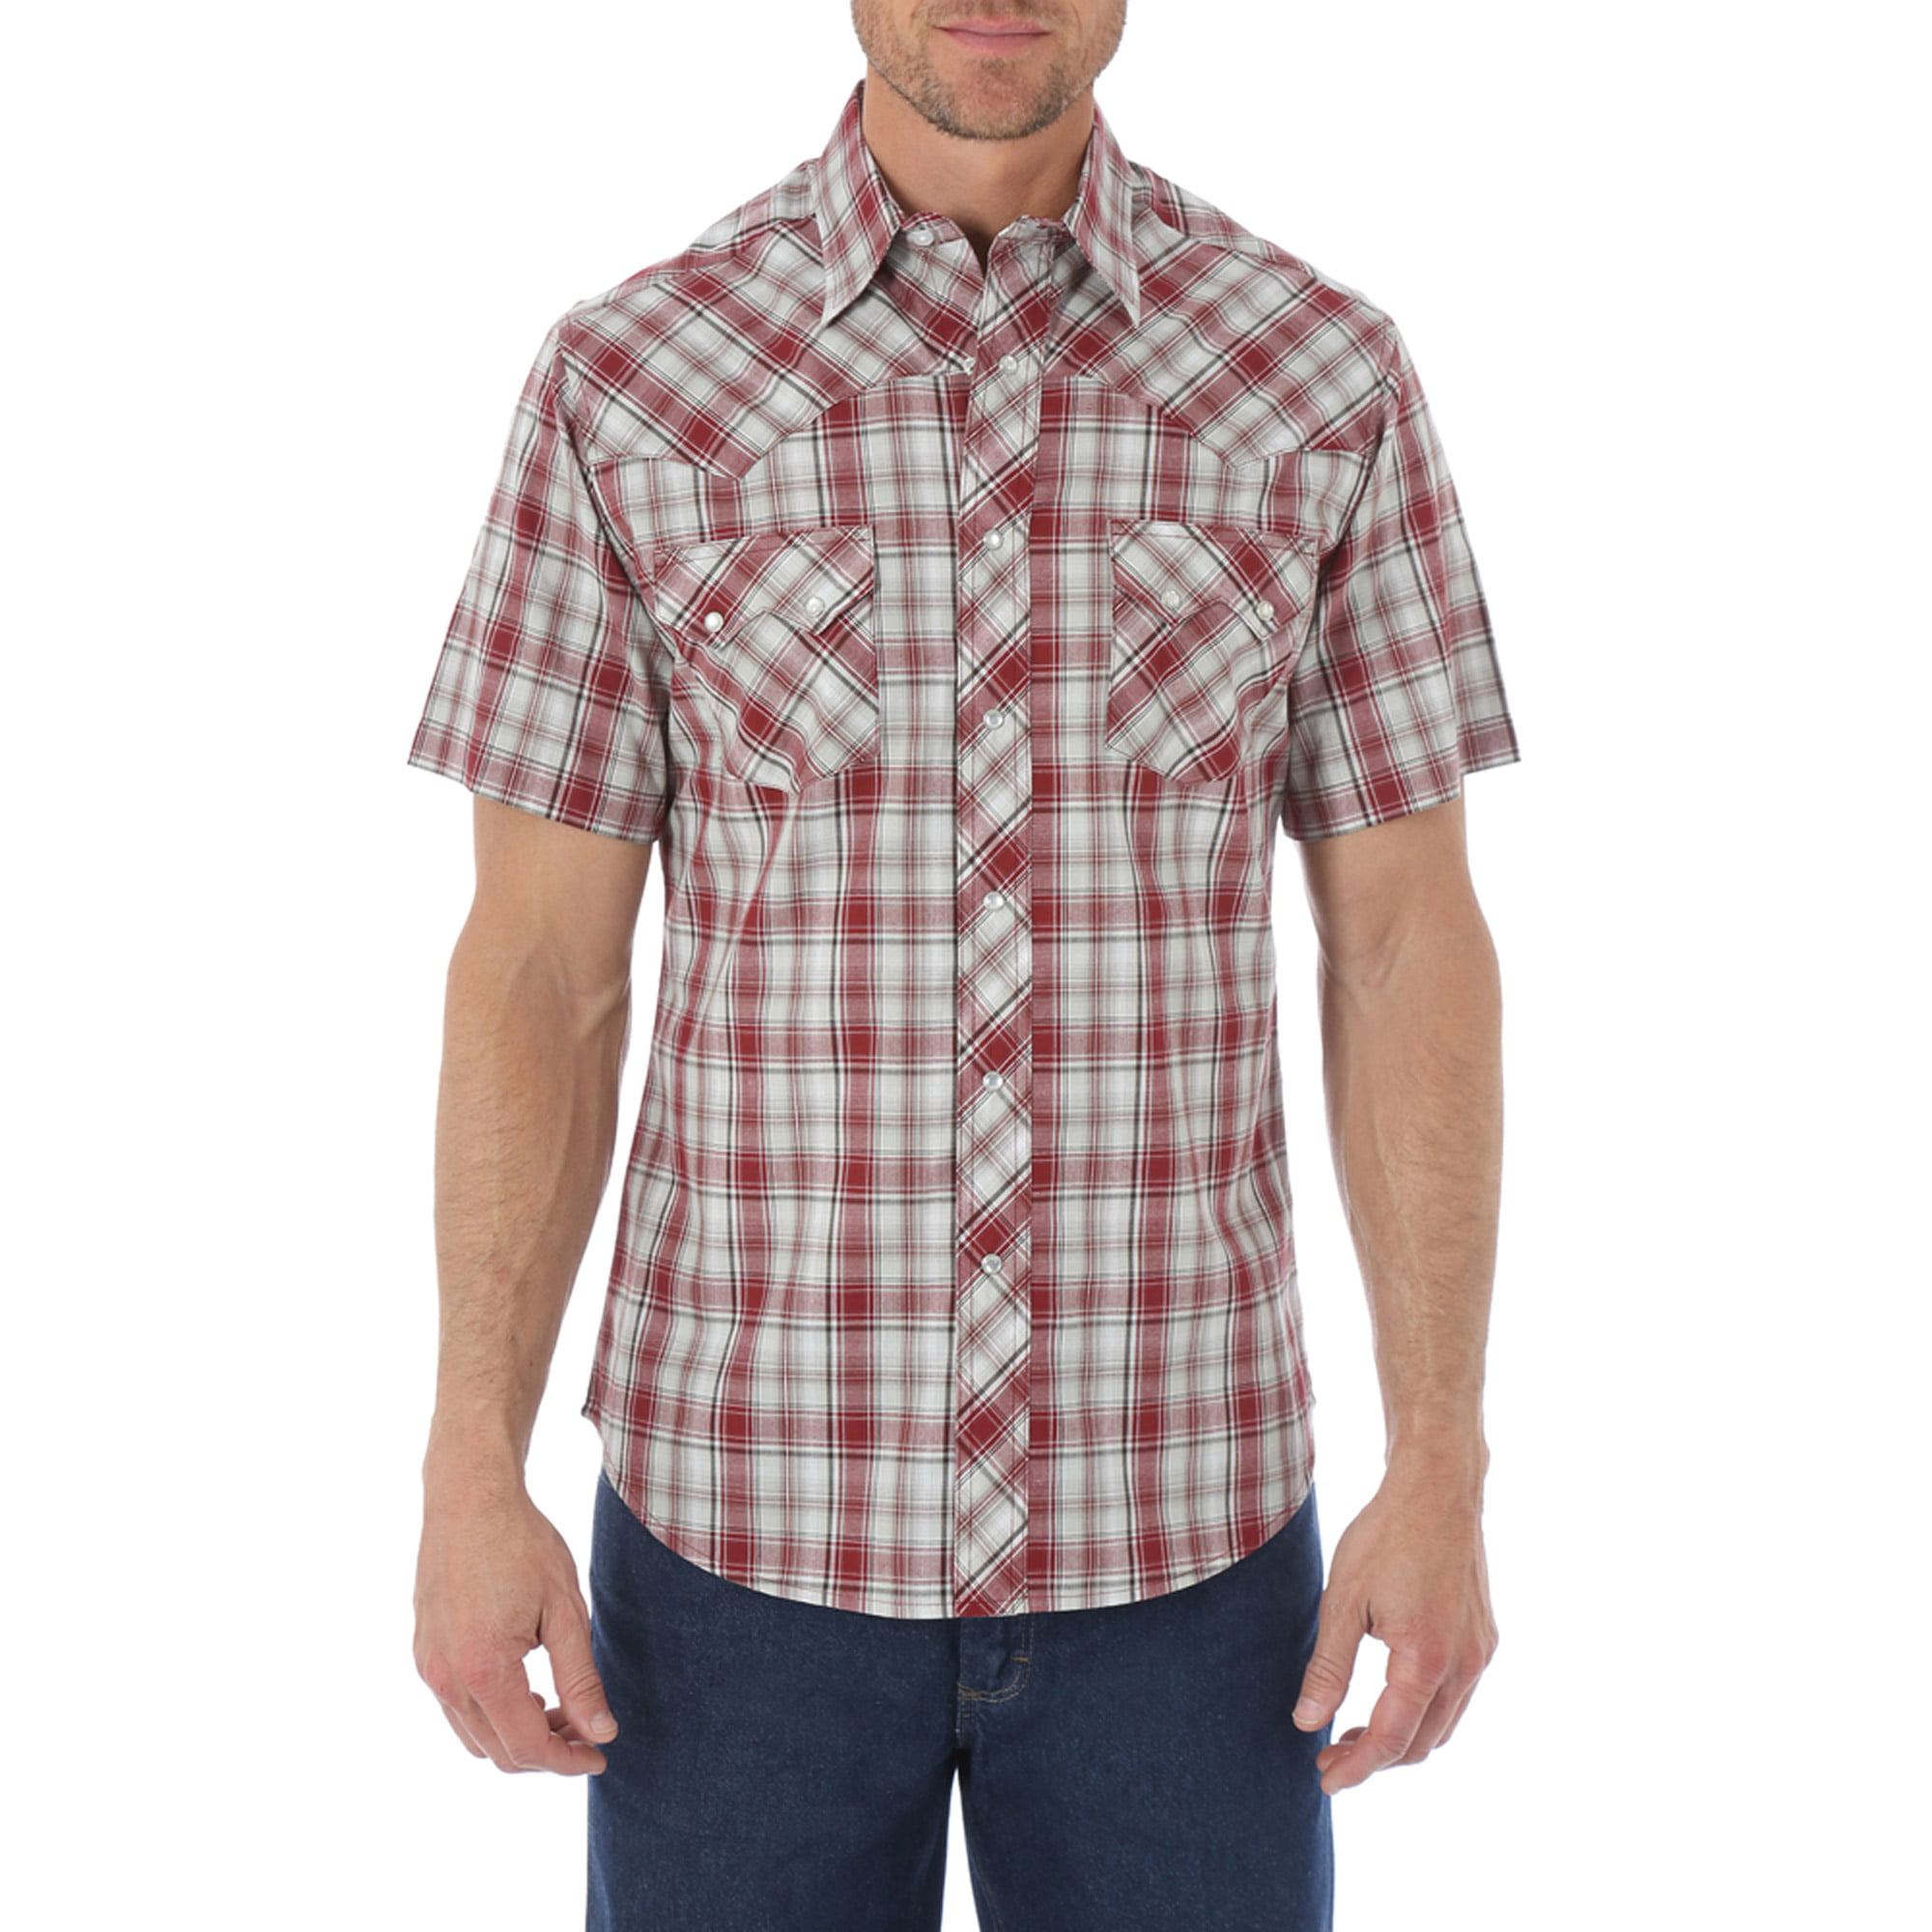 Mens' Short Sleeve Western Shirt - Walmart.com